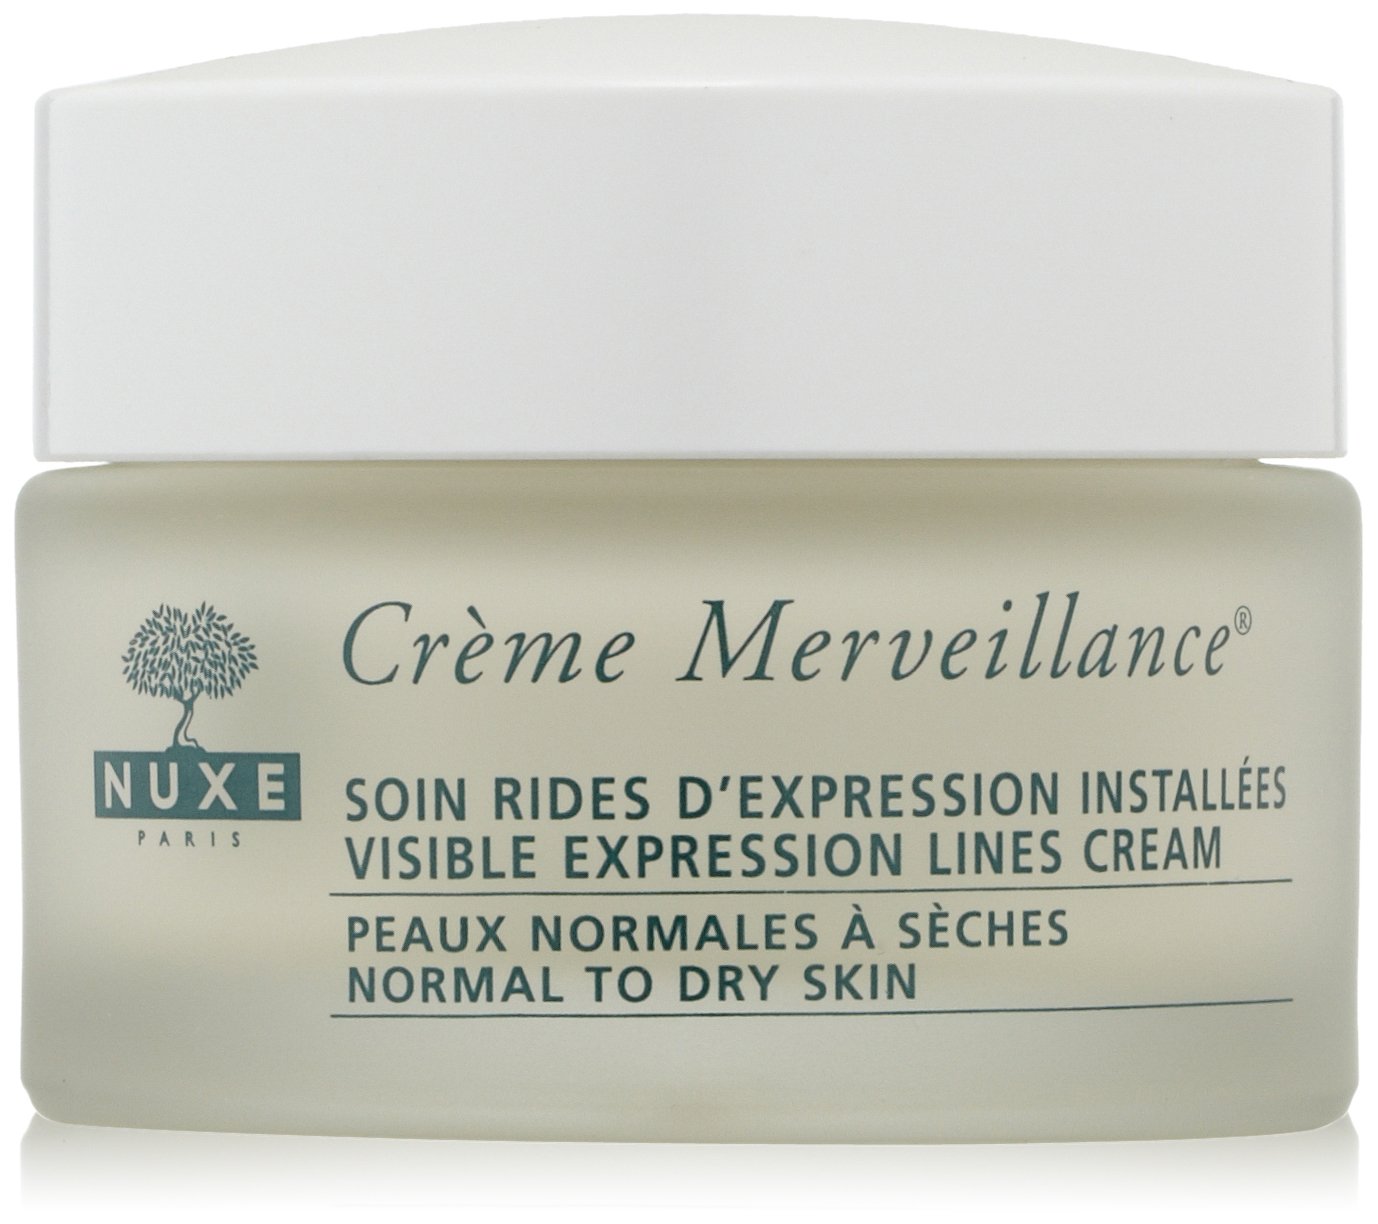 Nuxe Merve Surveillance Cream PNS Men Pack of 1x 50 ml